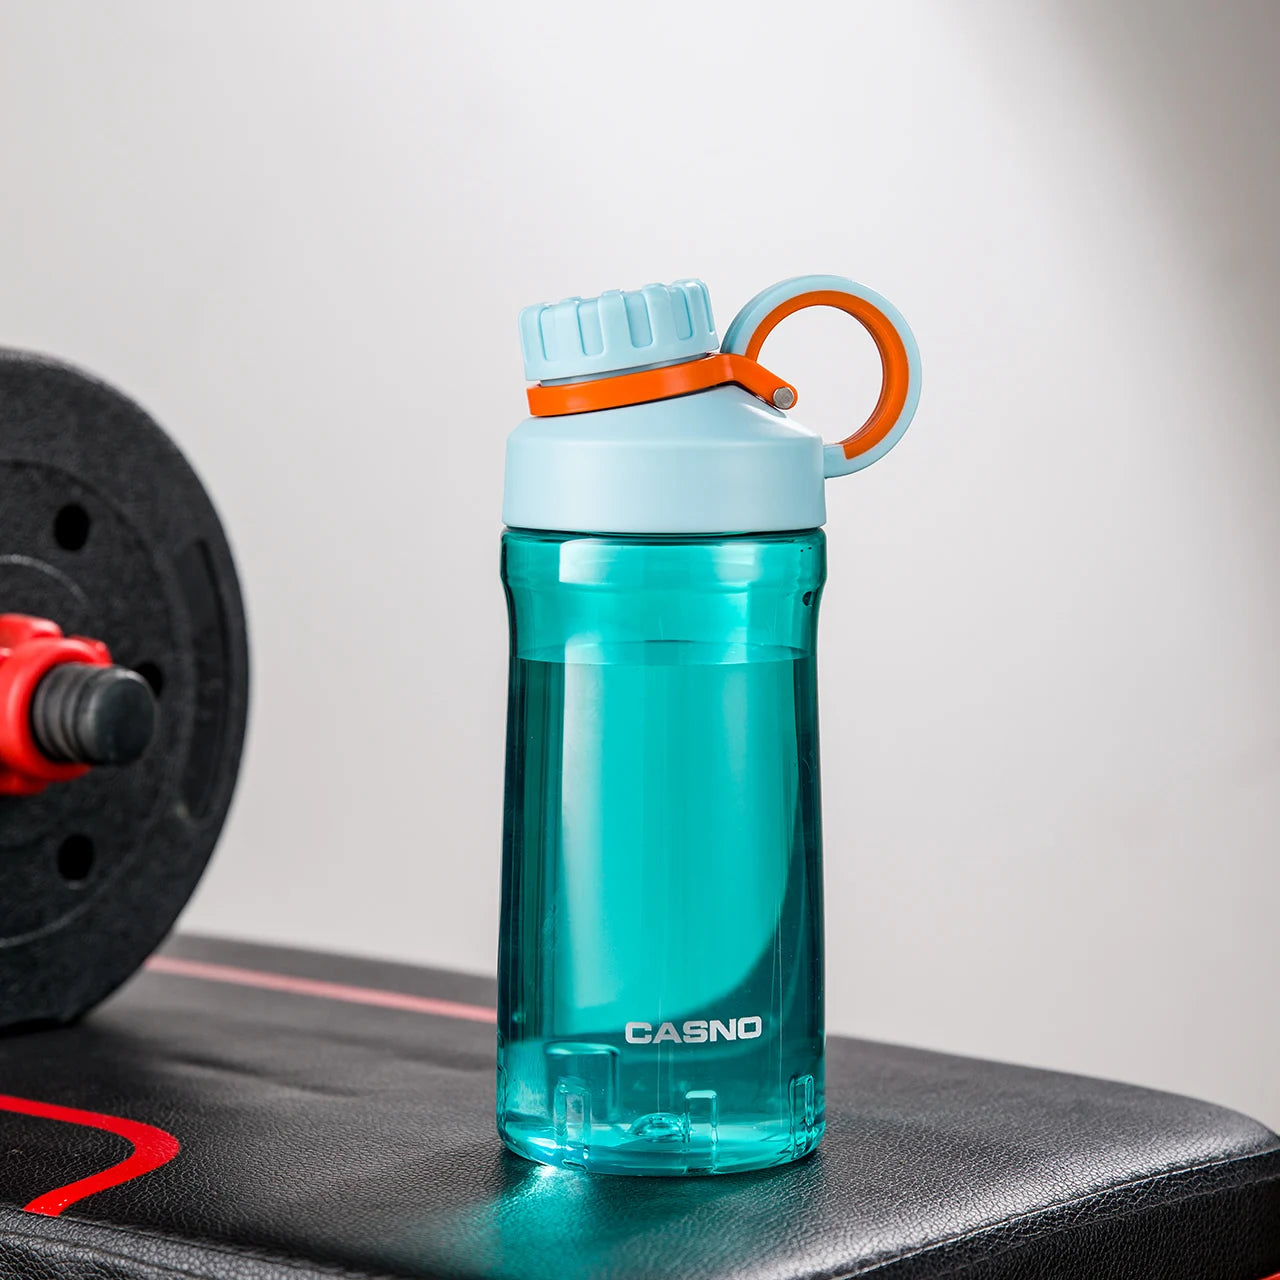 Eine türkis, transparente Sporttrinkflasche auf einer Fitnessbank. Die Flasche hat einen schwarzen Schraubverschluss mit einem Henkel und ist mit dem Wort der Marke "CASNO" beschriftet. Im Hintergrund ist eine Hantel mit roten Details zu sehen.